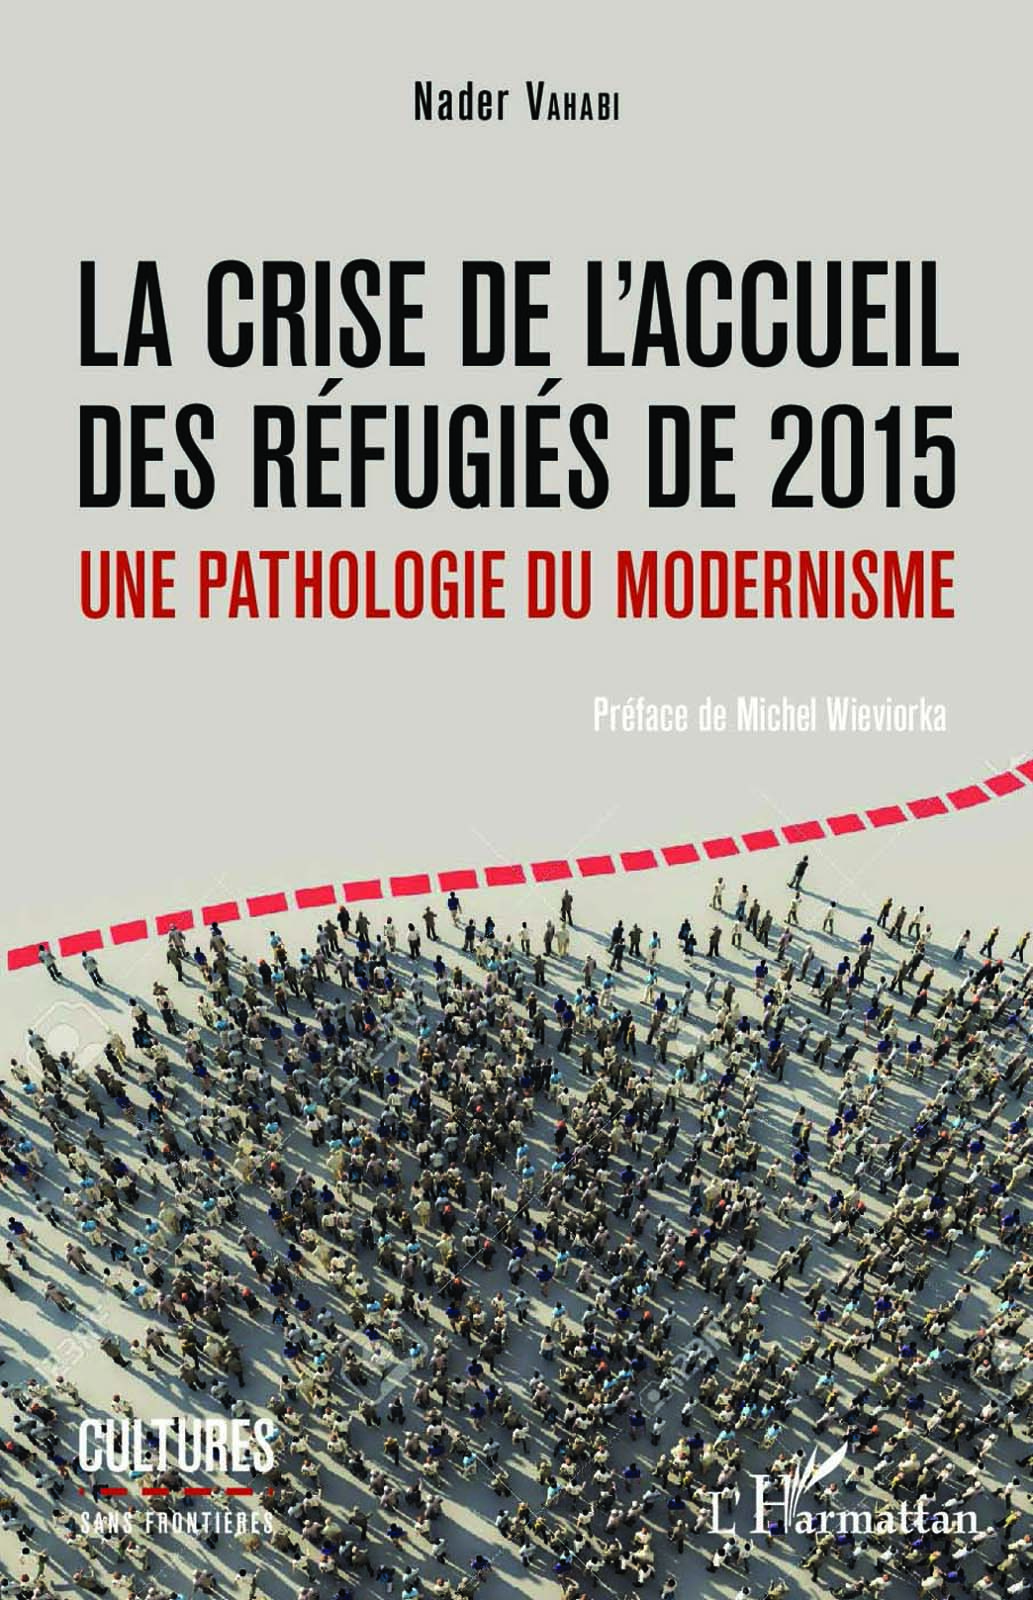 La crise de l'accueil des réfugiés de 2015. Une pathologie du modernisme